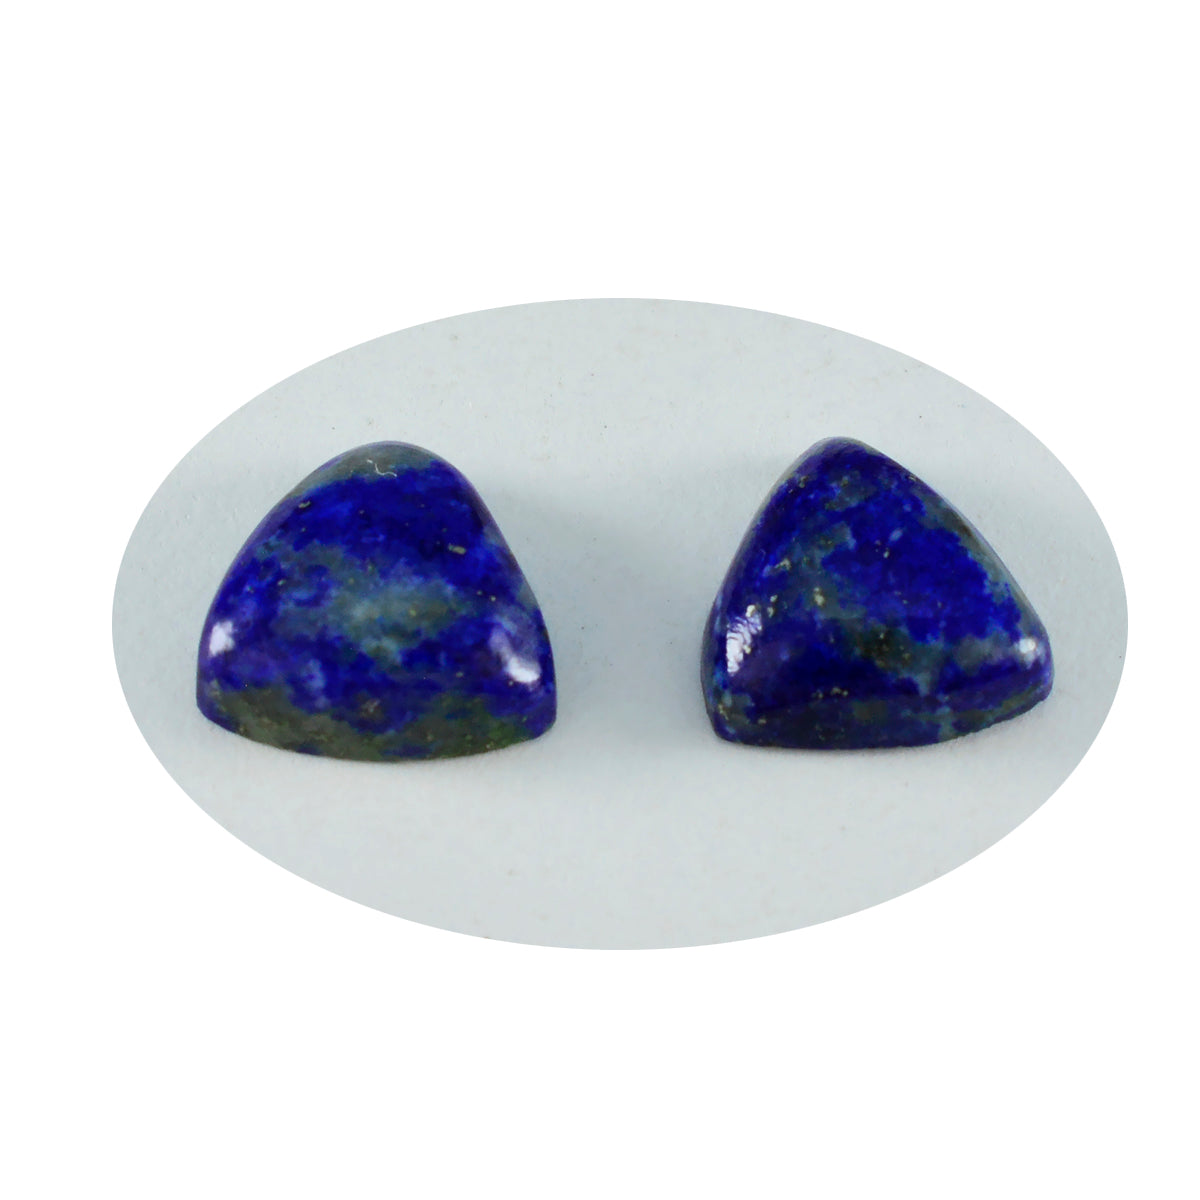 Riyogems 1 pieza cabujón de lapislázuli azul 10x10 mm forma de billón gemas de calidad atractivas